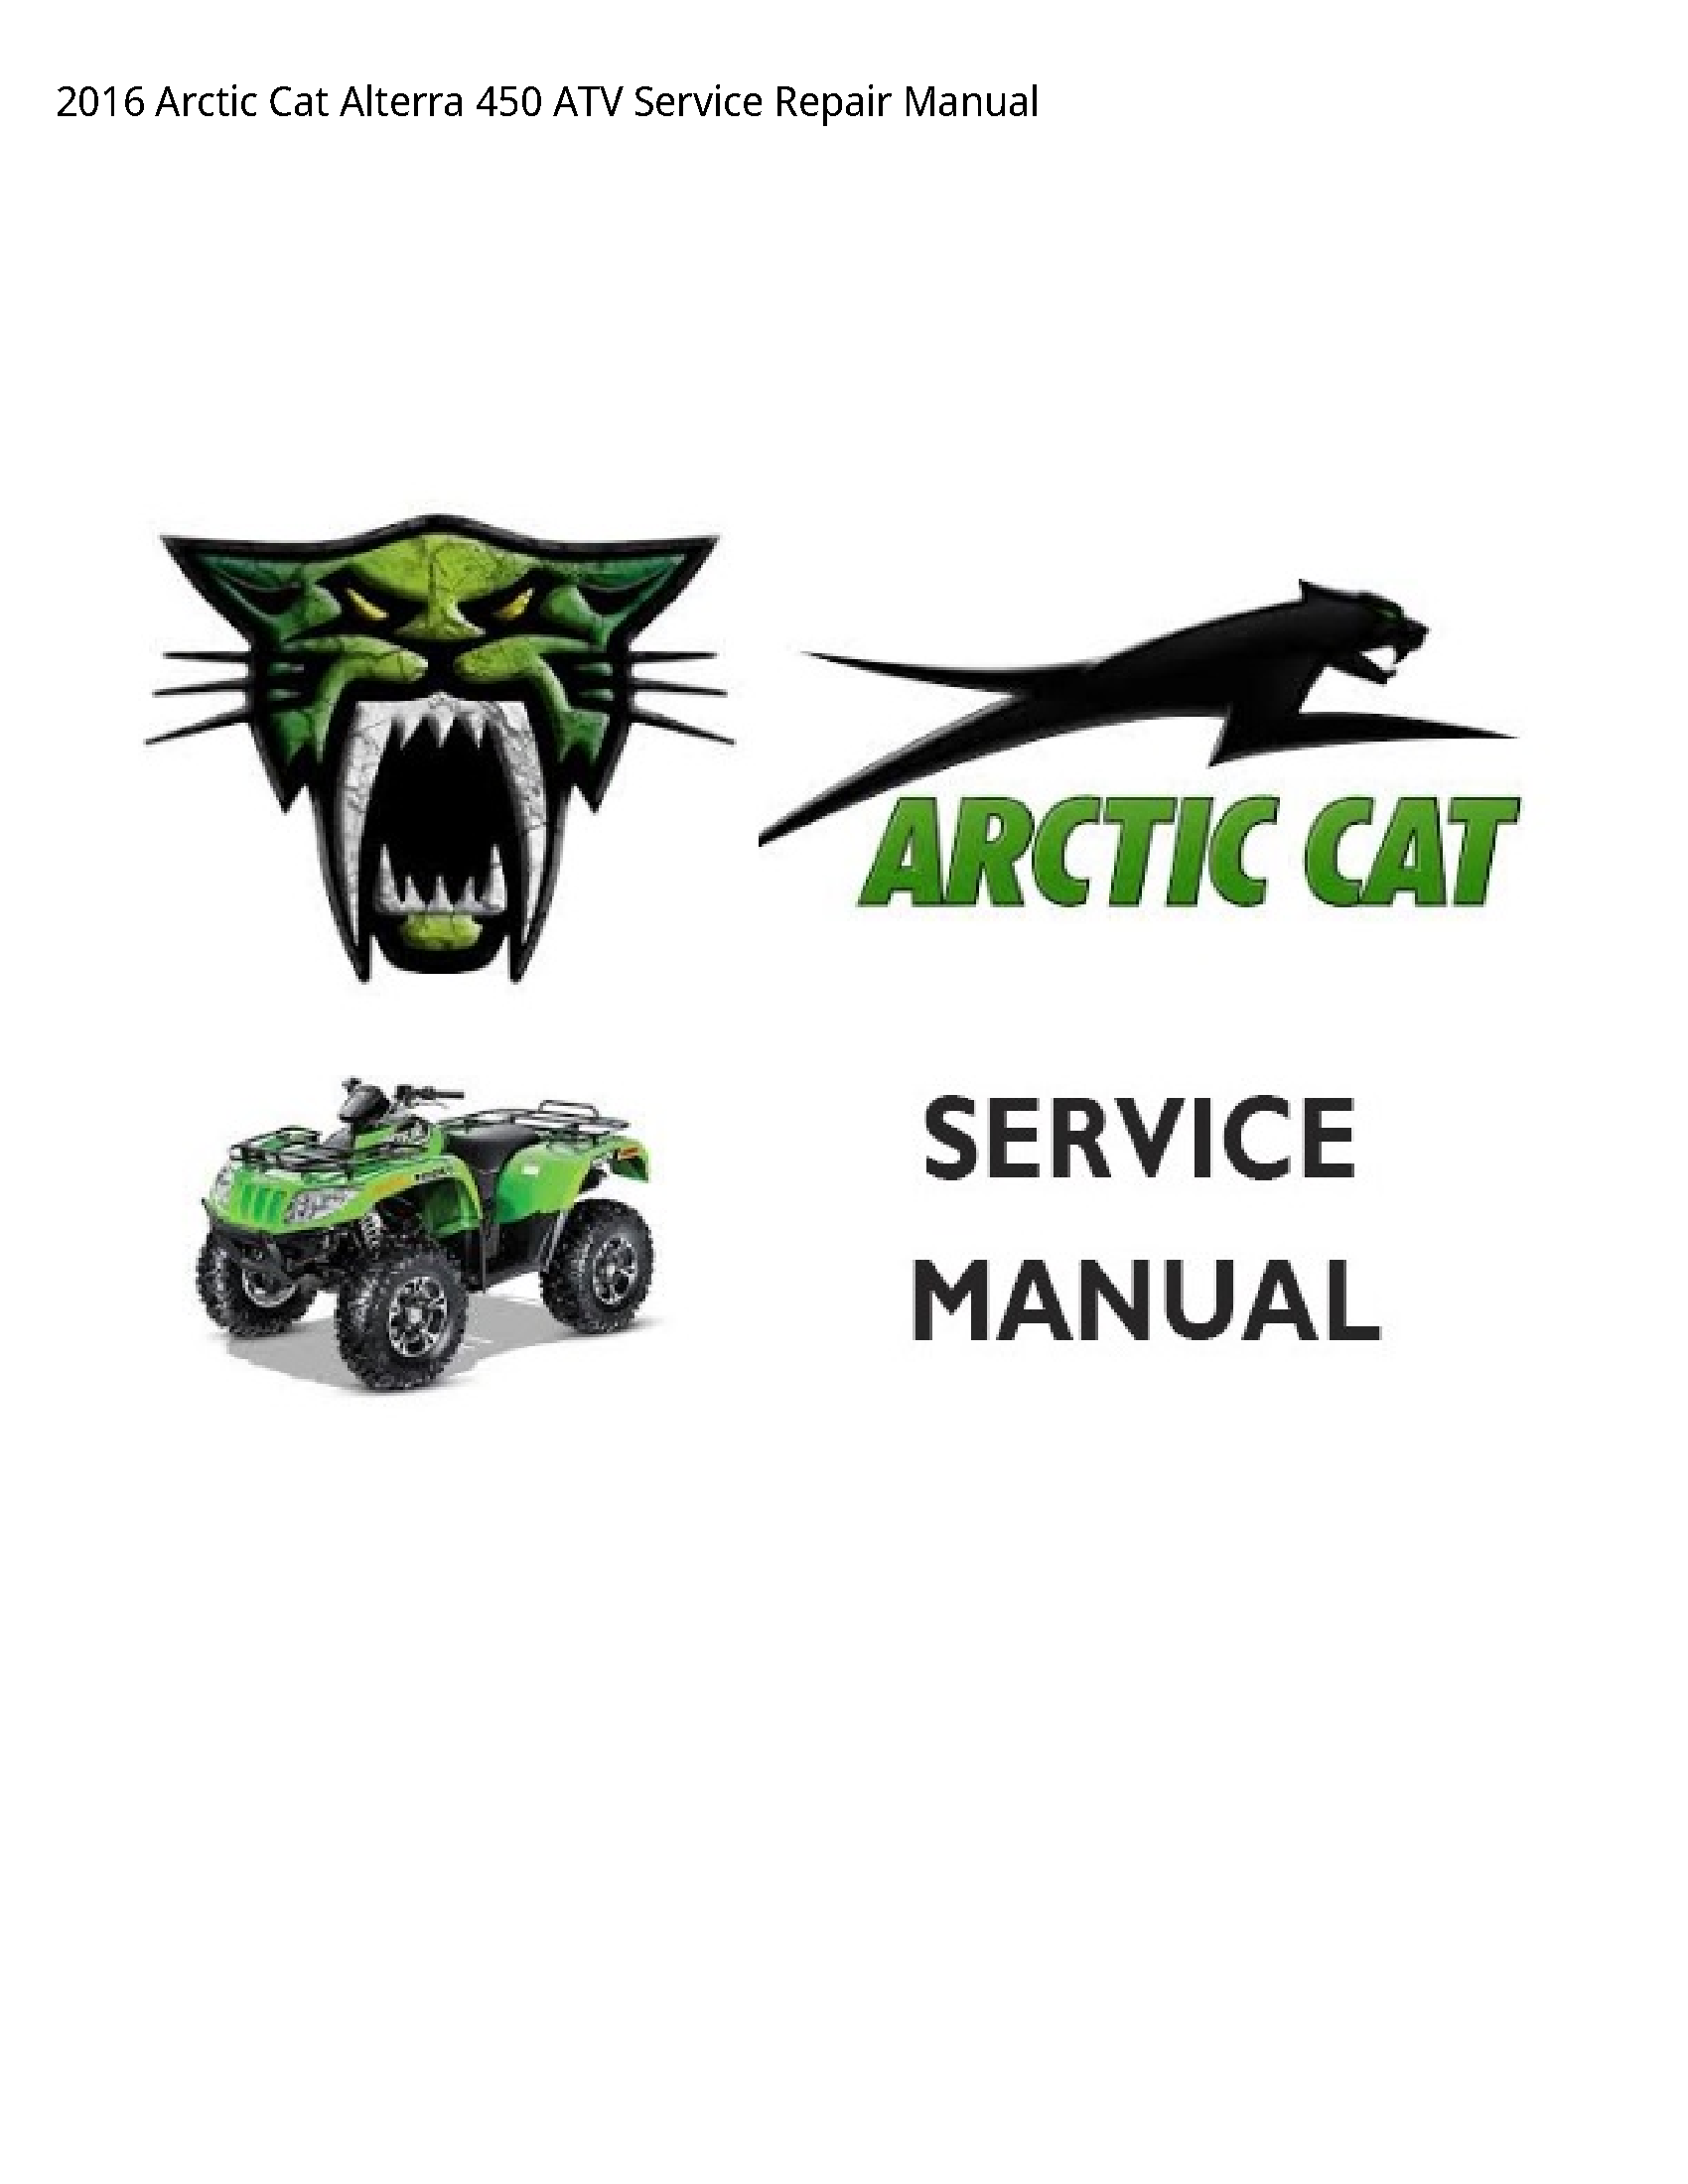 Arctic Cat 450 Alterra ATV manual